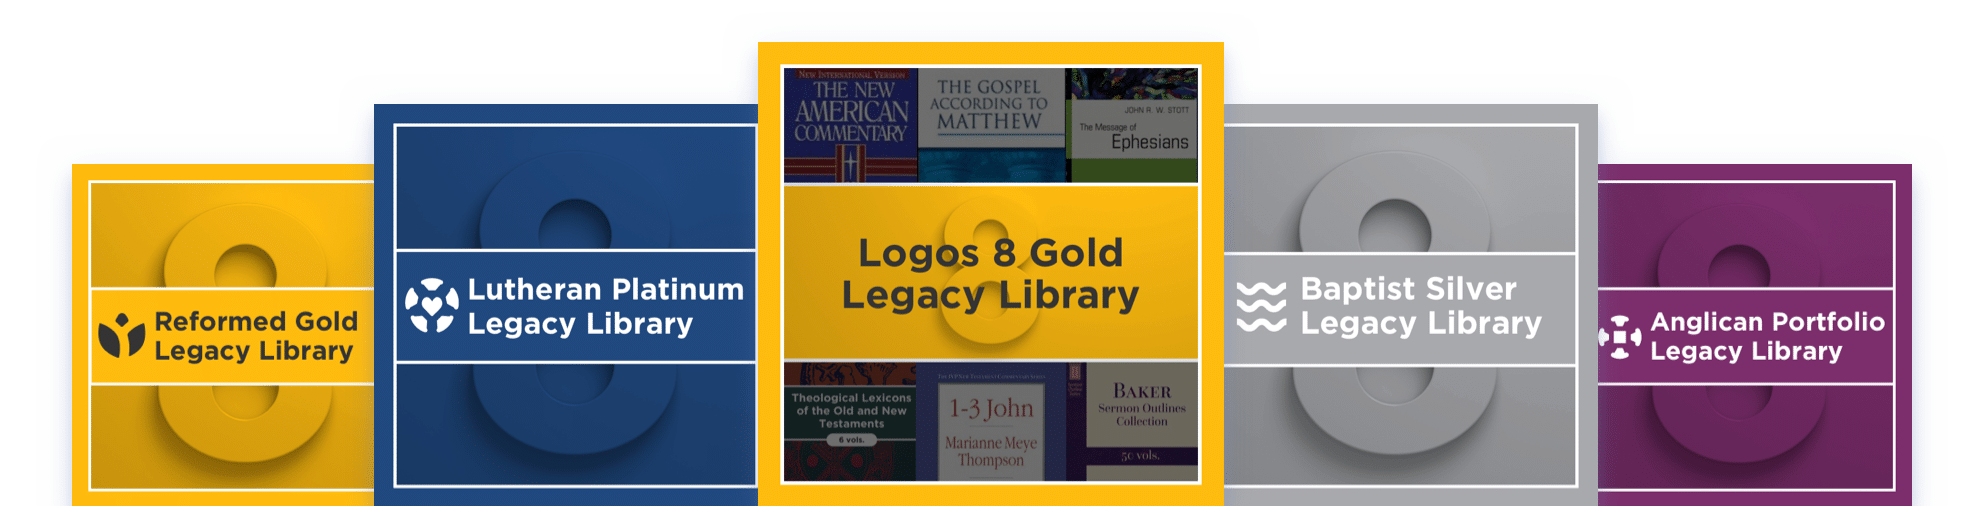 Logos 8 Legacy Libraries